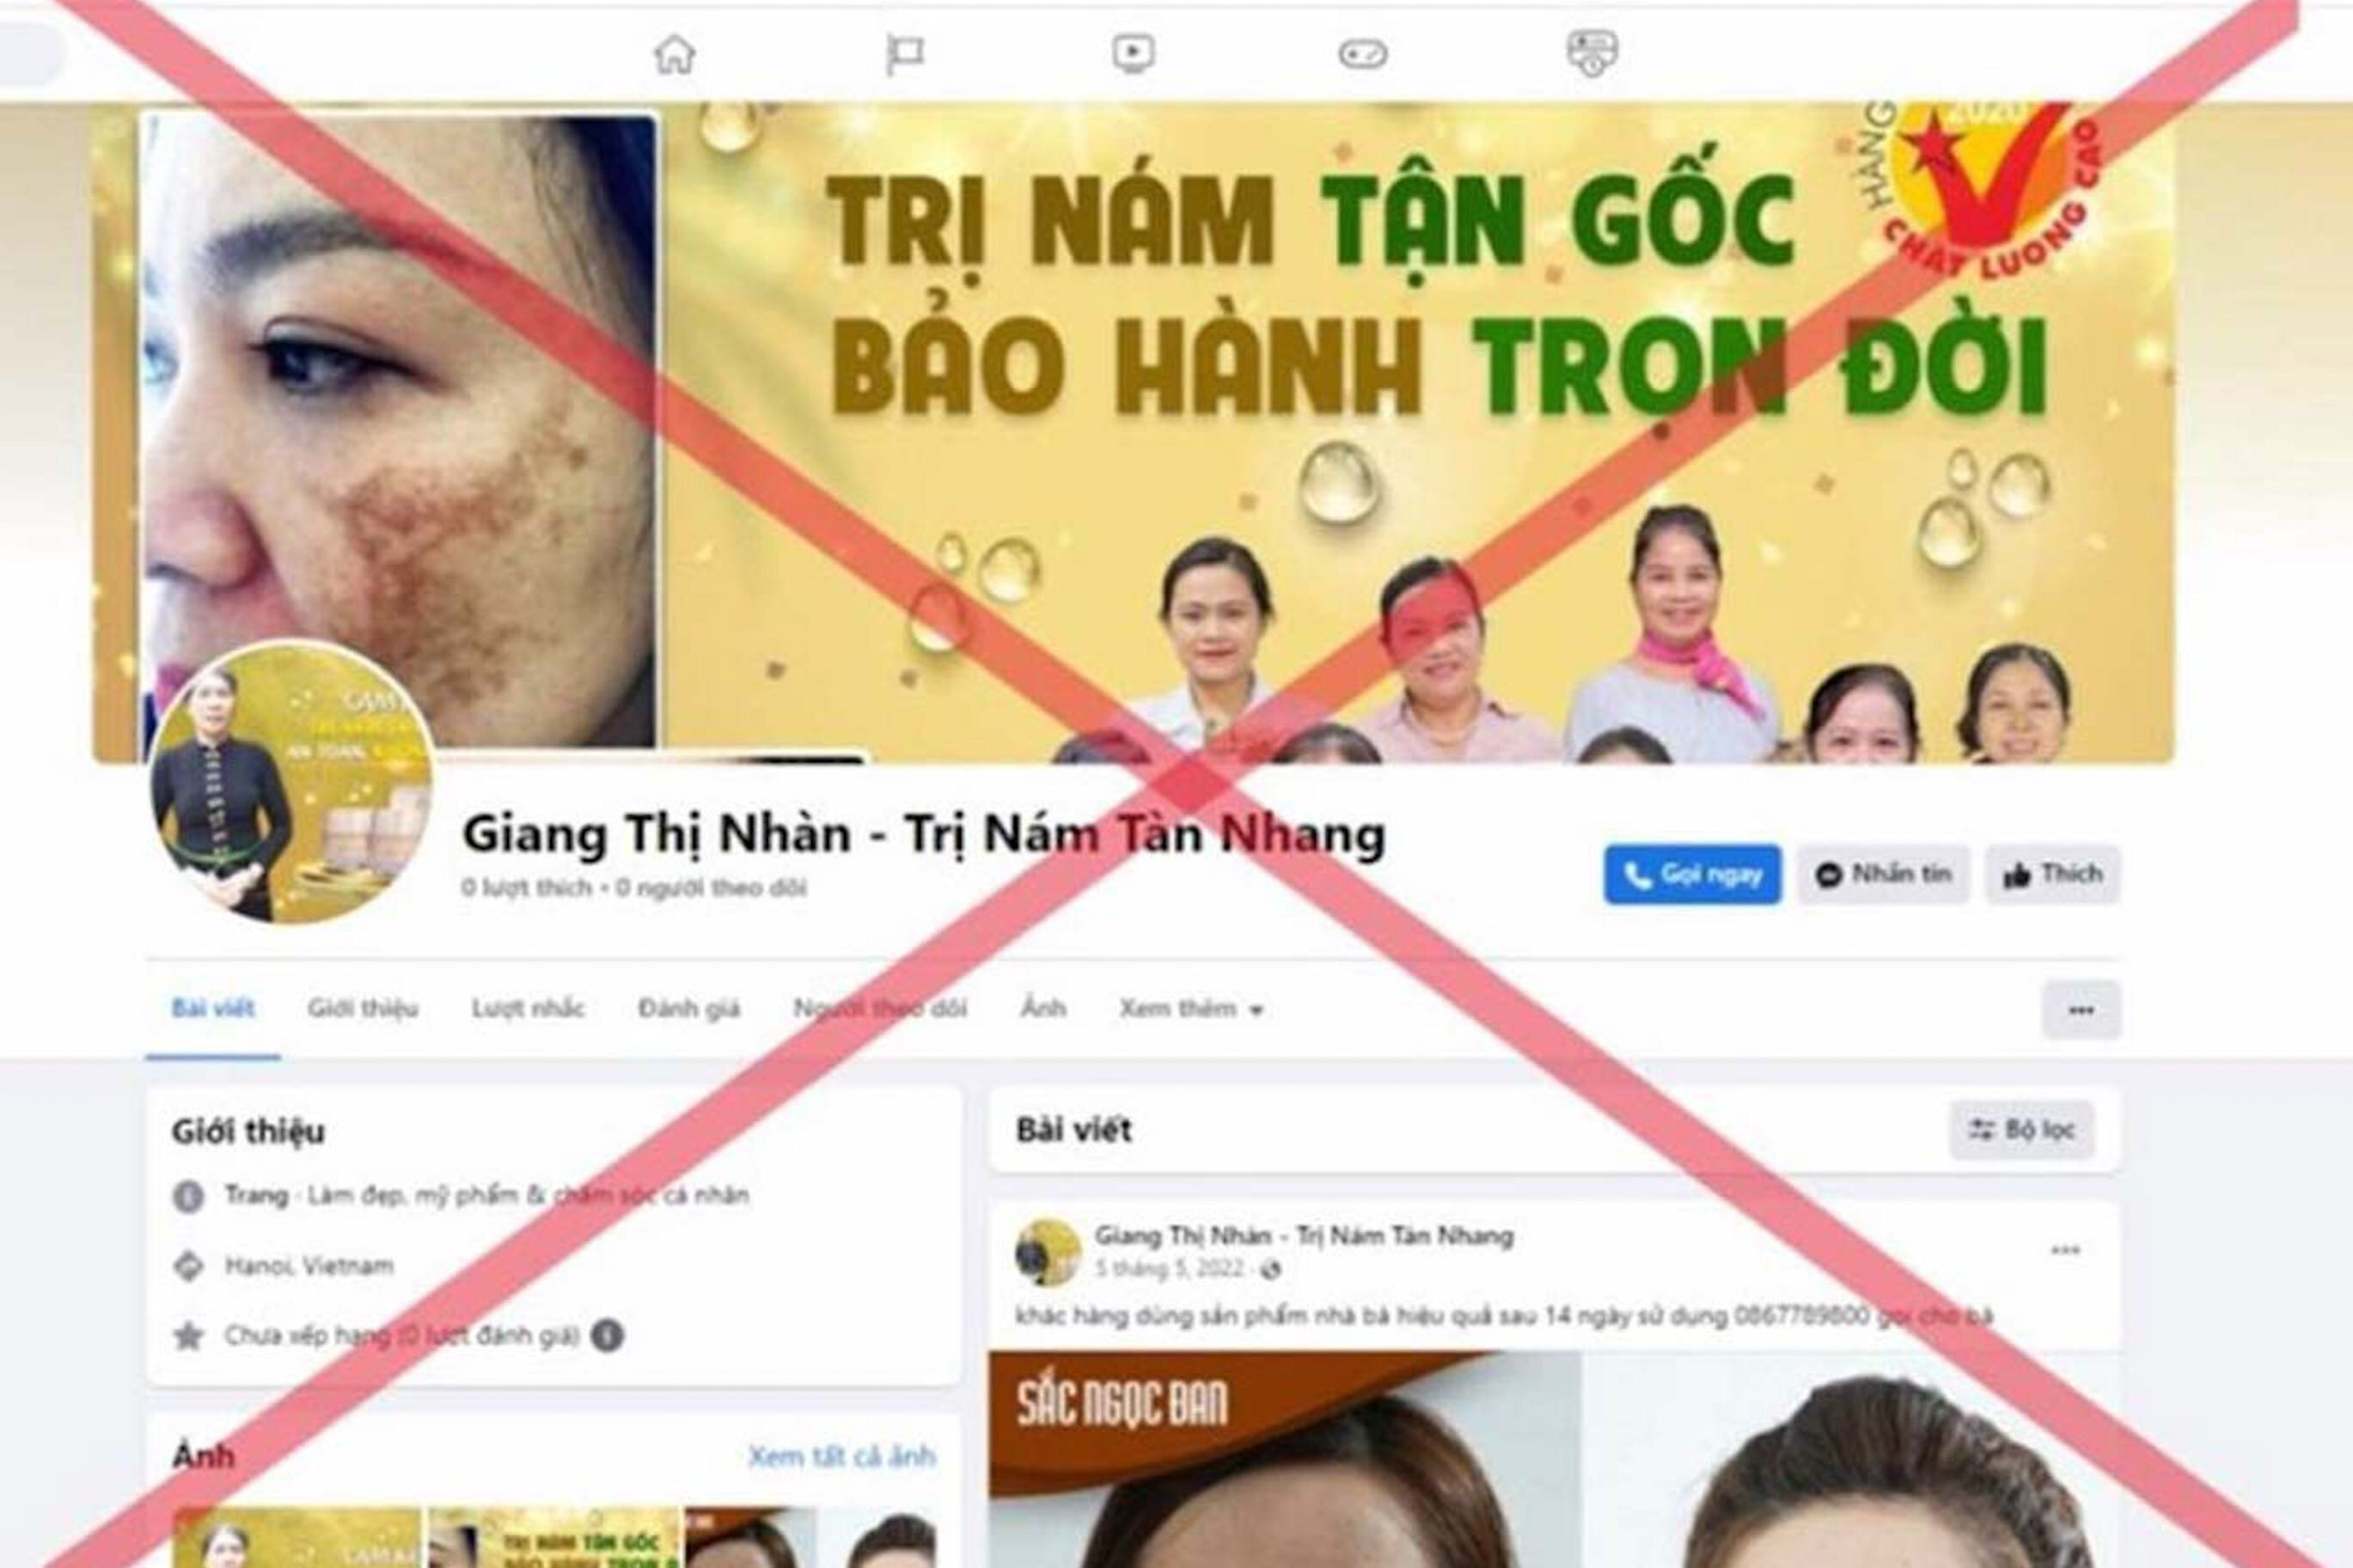 Hình ảnh, clip quảng cáo về lương y có tên là Giang Thị Nhàn xuất hiện trên mạng xã hội.